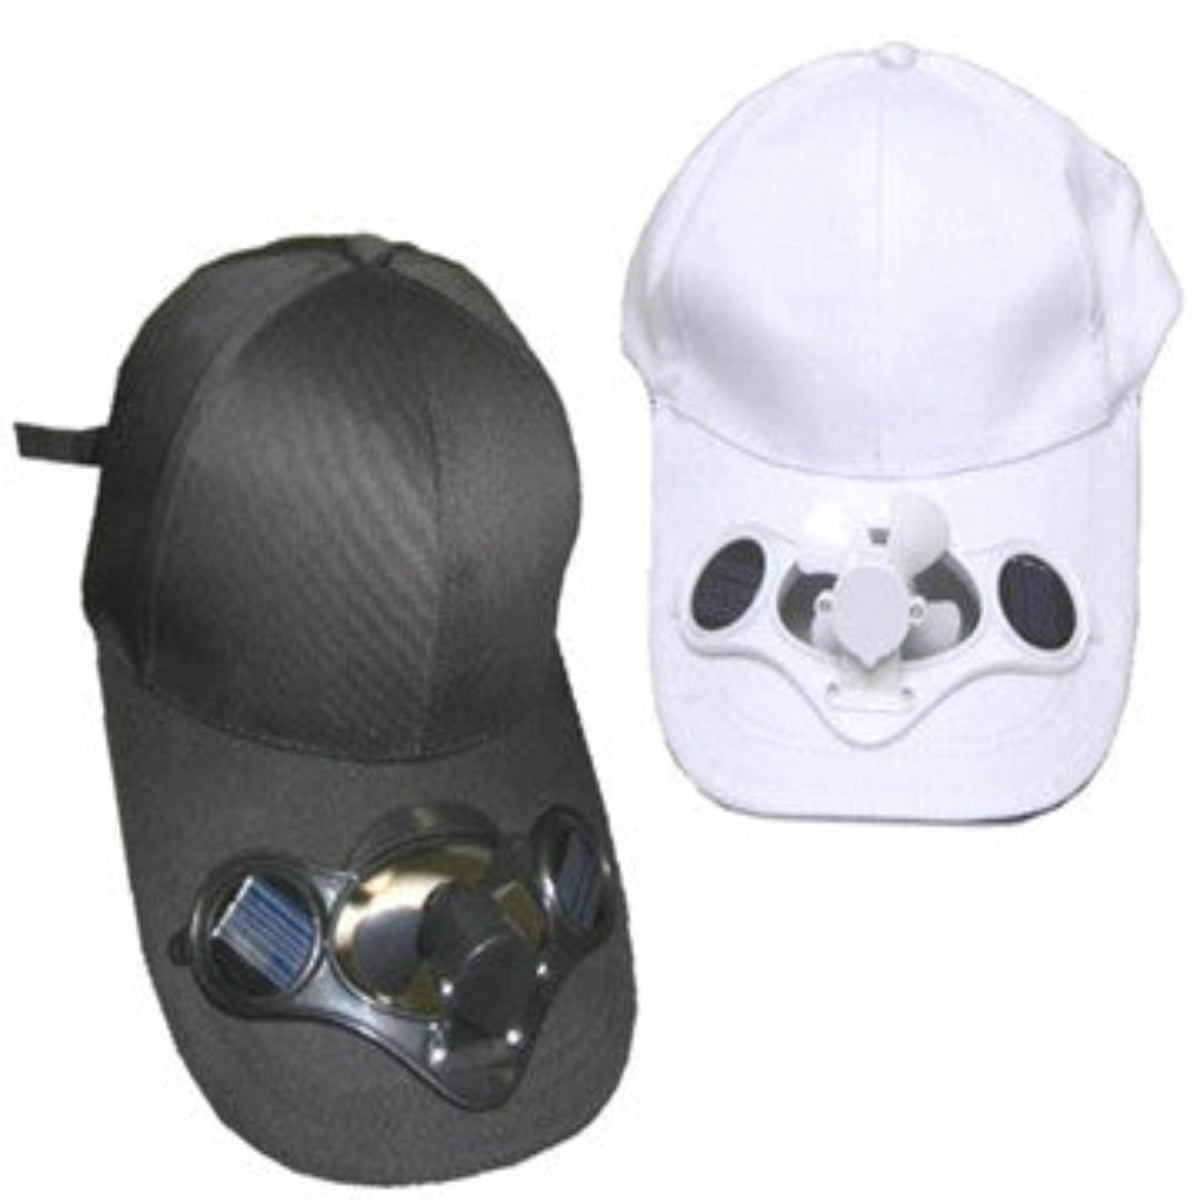 Solar Powered Fan Cap, Solar Protection Hat, Fan Hat Solar Cool